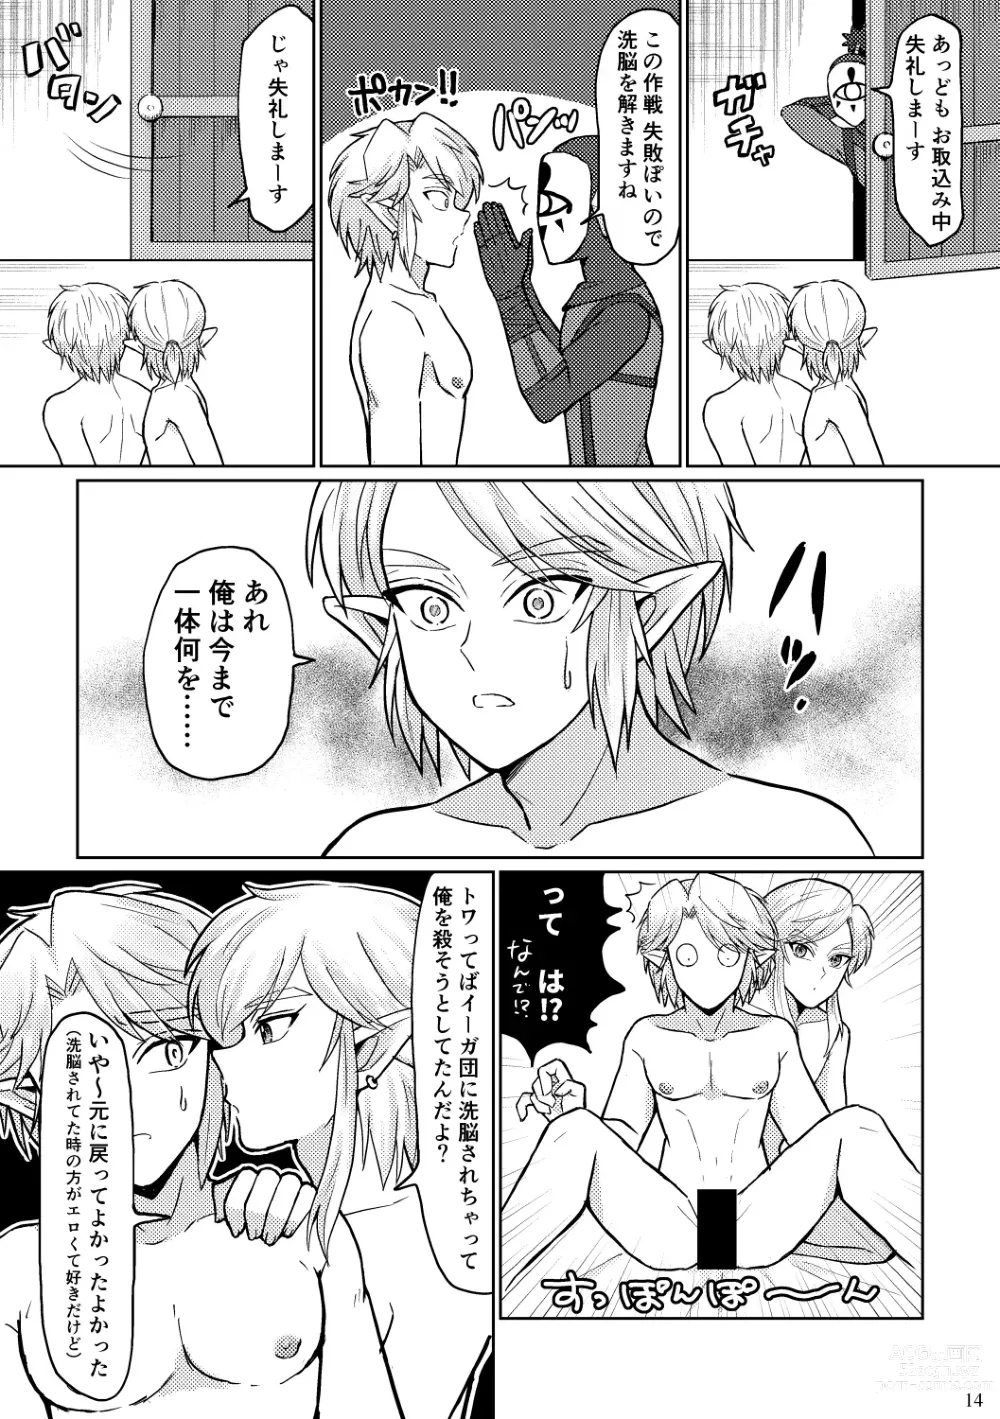 Page 14 of doujinshi Docchi ga Ookami Nandaka Wakaranai.